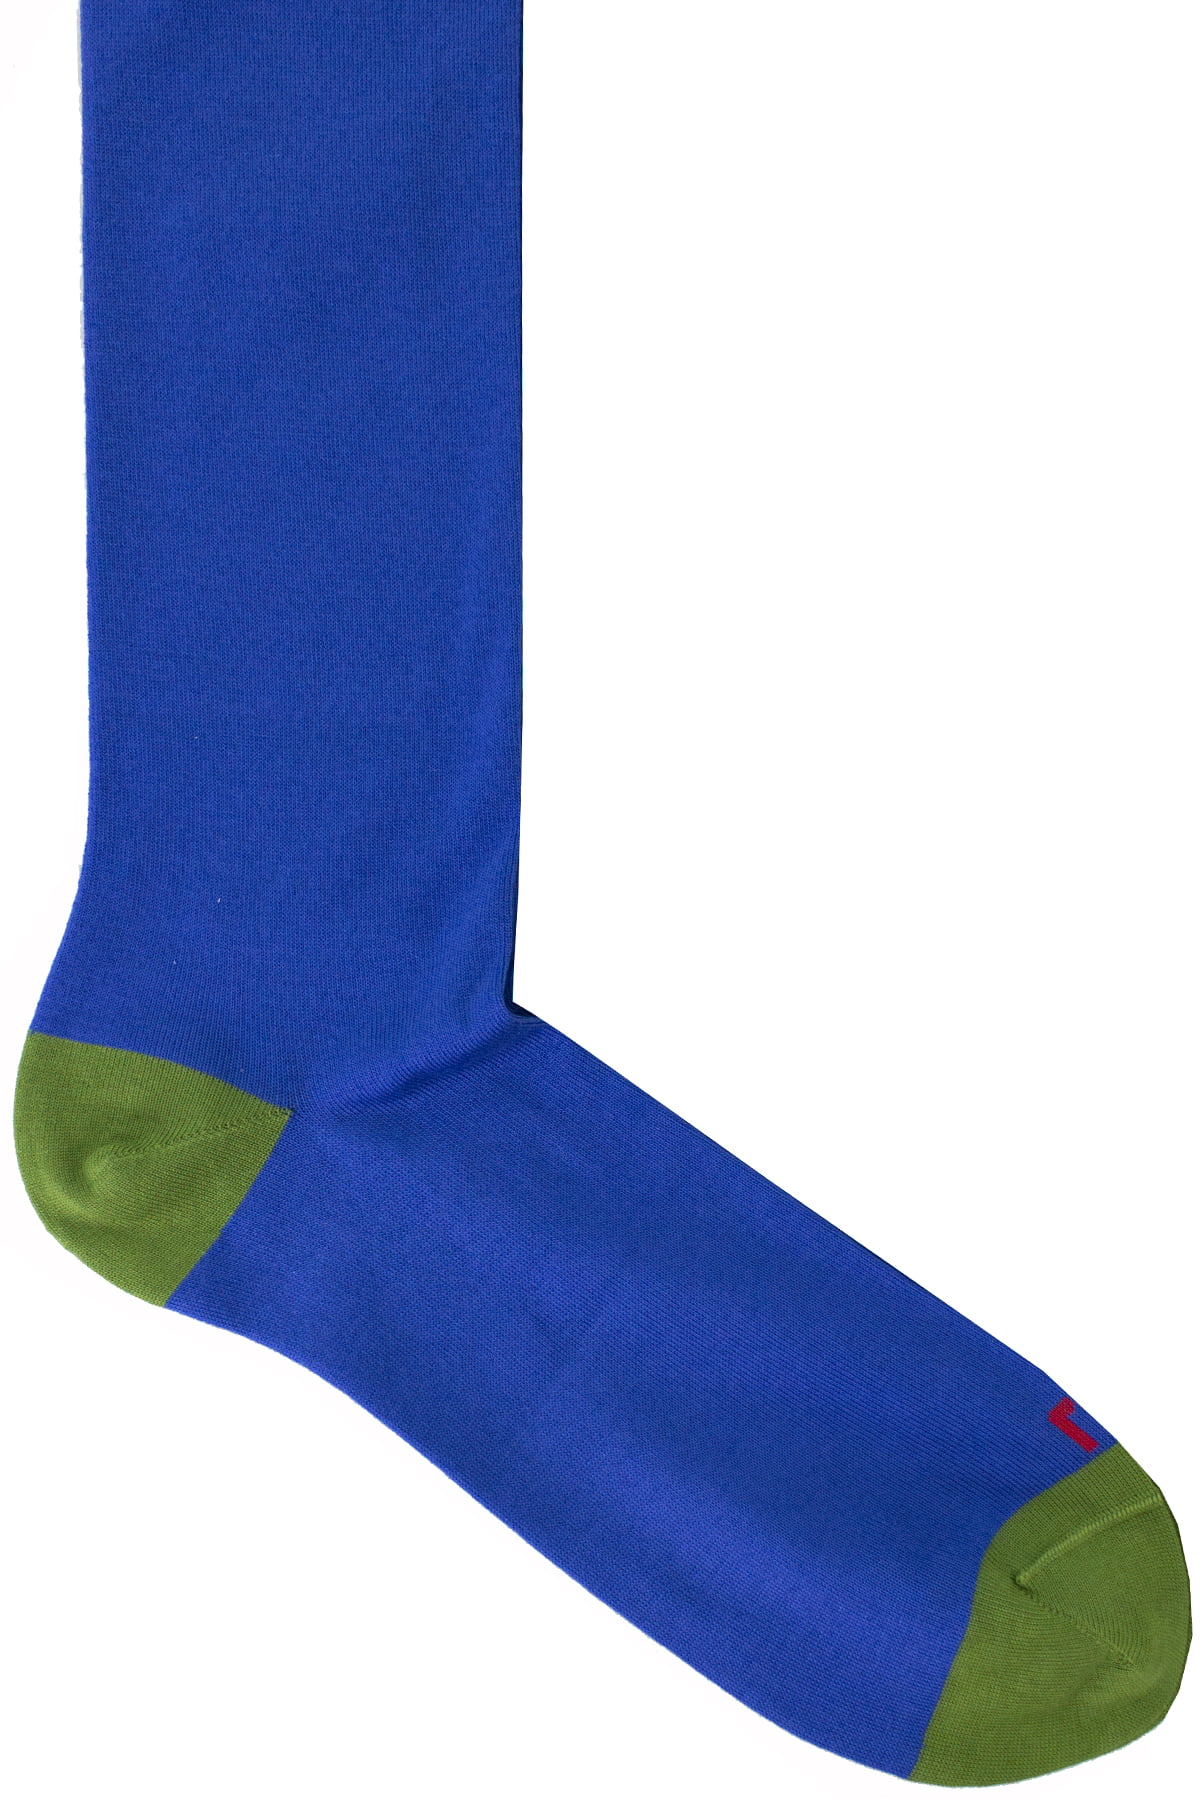 Calzini uomo royal blu tinta unita con bordino verde invernali lunghezza ginocchio